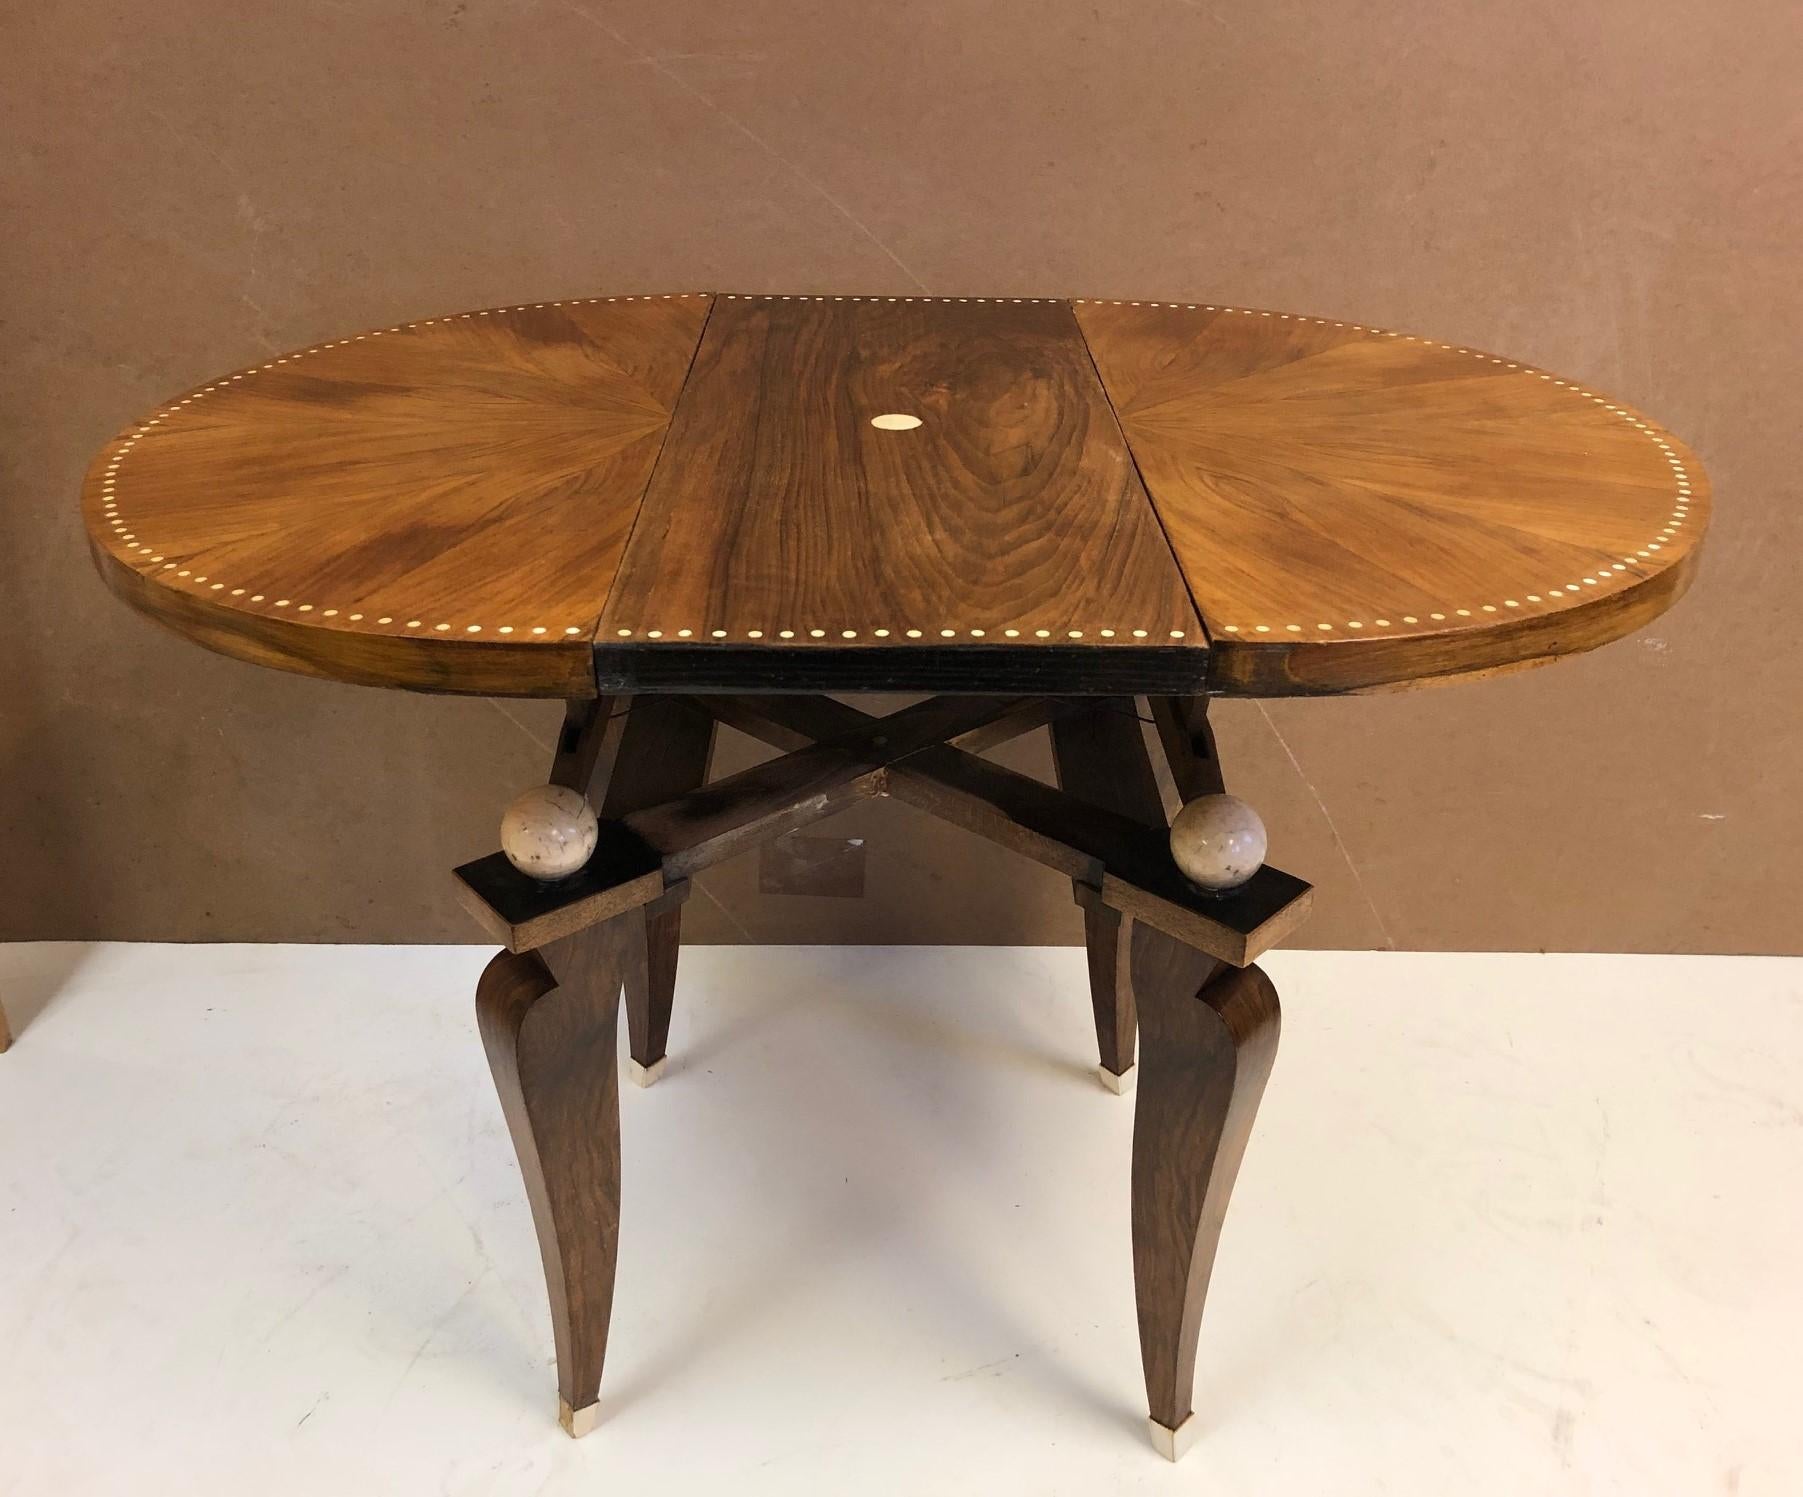 Verstellbarer französischer Art-Déco-Tisch aus den 1930er Jahren. Der Tisch ist aus Nussbaumholz mit Knochenintarsien auf der Tischplatte und die Säbel sind ebenfalls aus Knochen. Hat vier runde lackierte Akzente unter der Tischplatte. Dieser Tisch